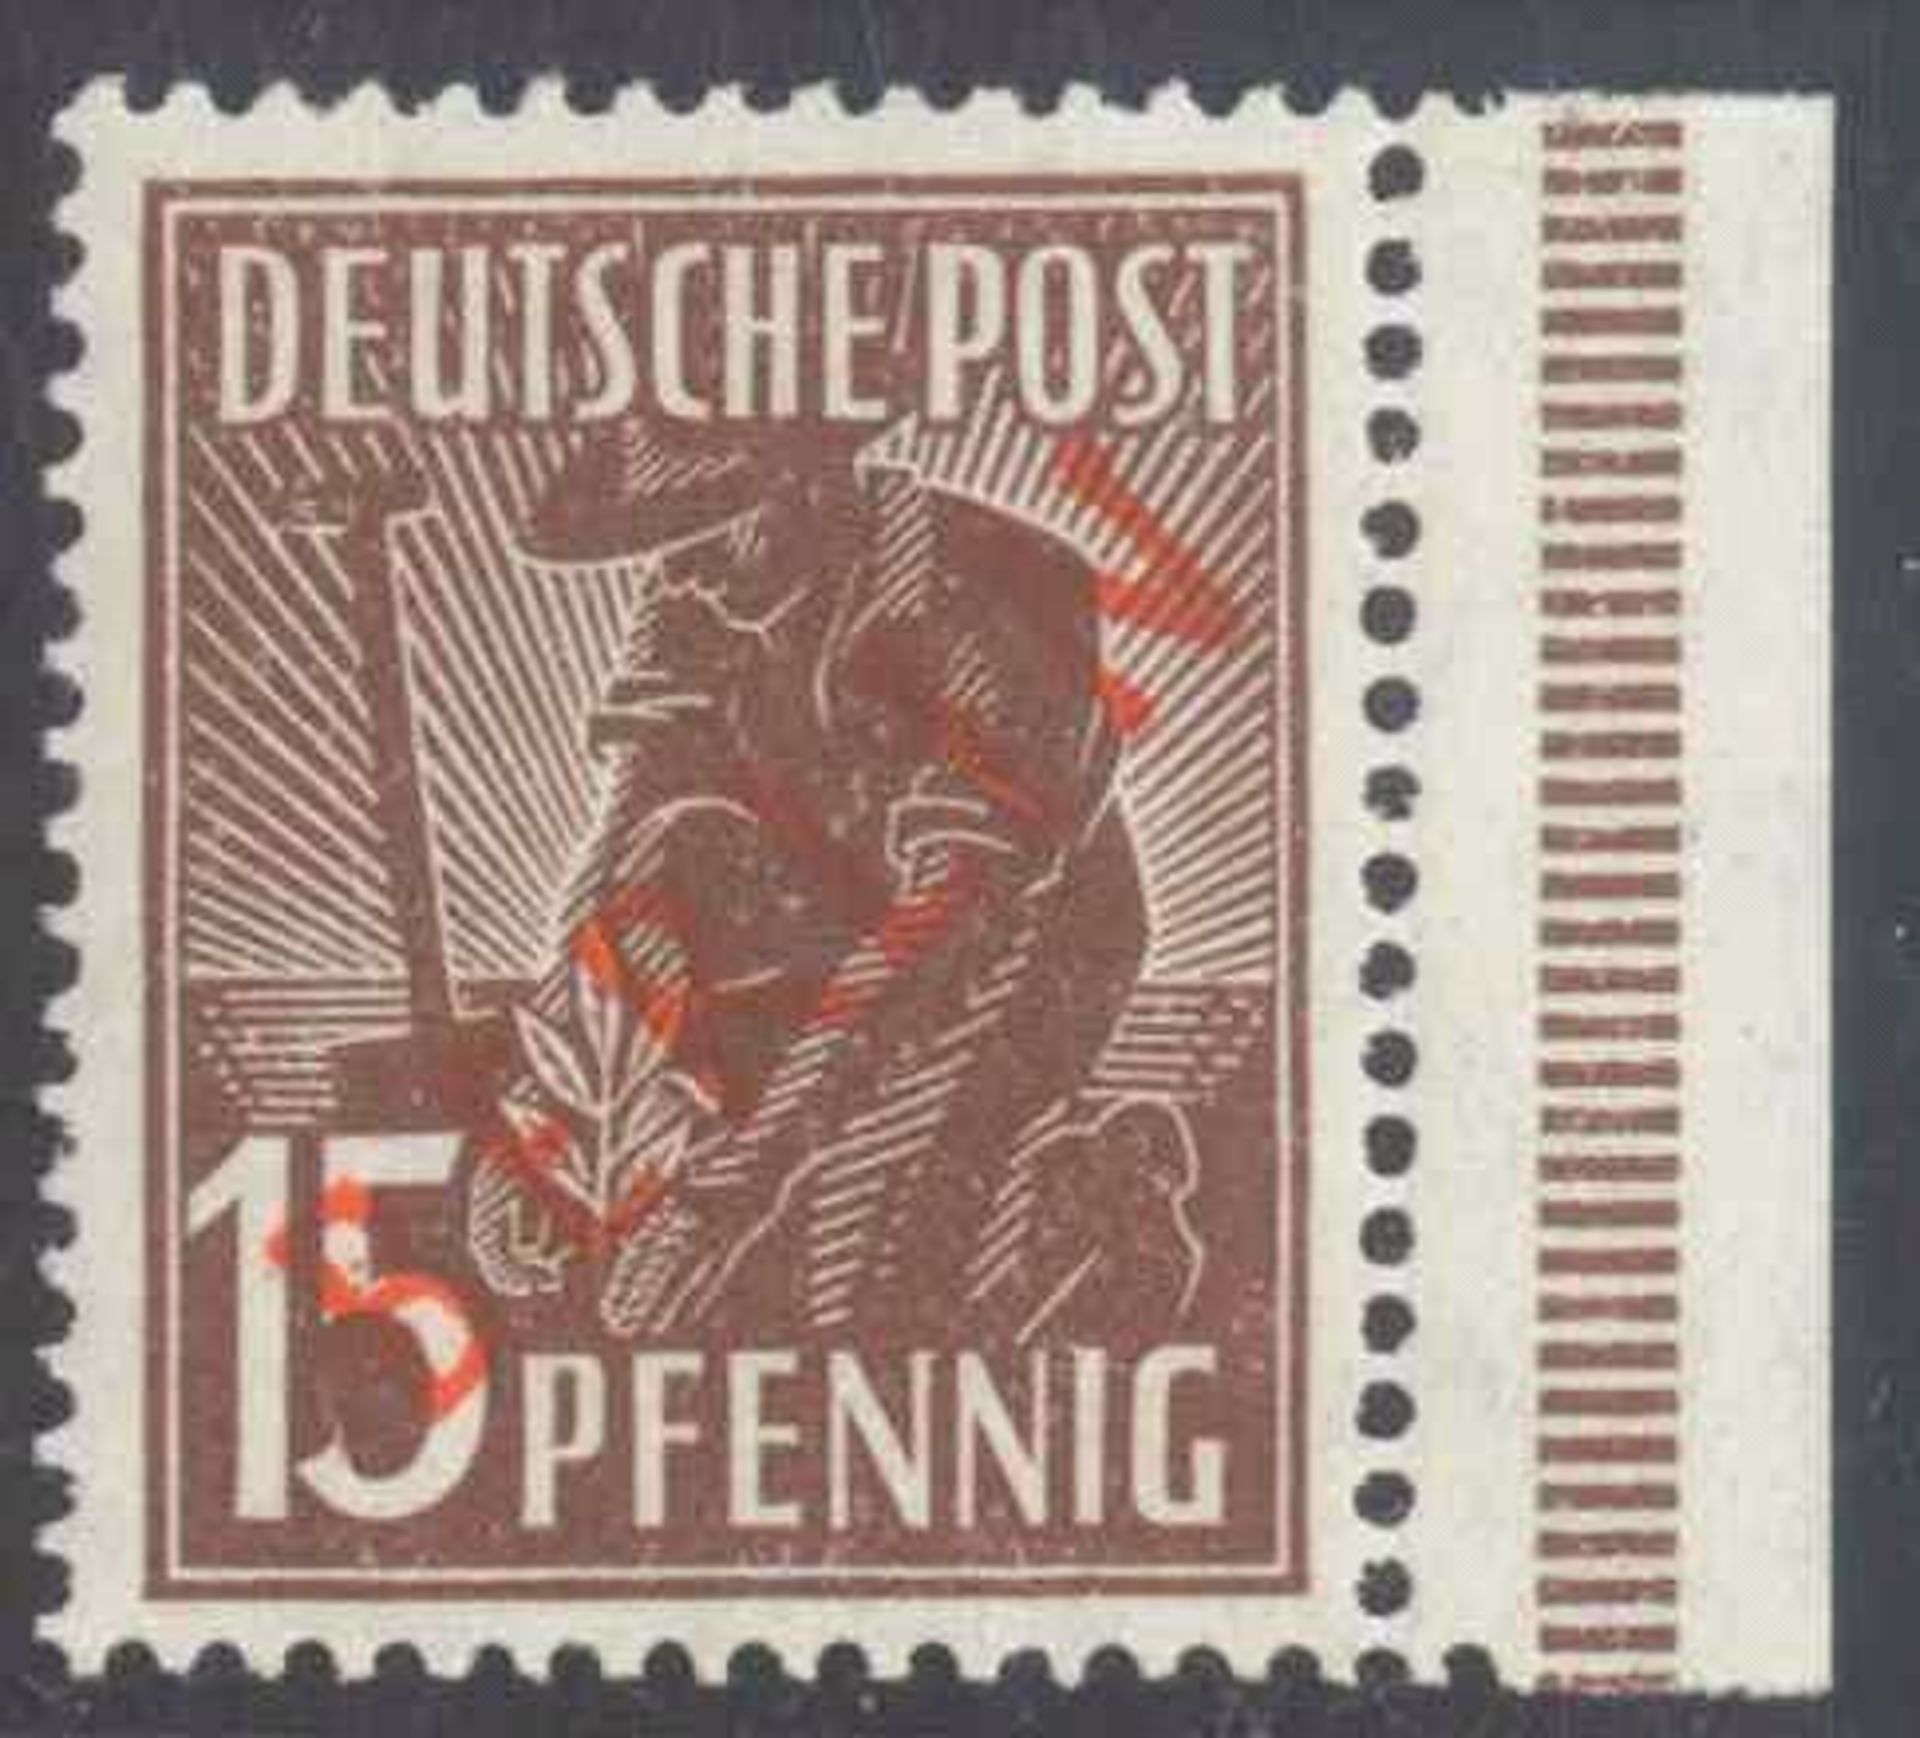 1949 Berlin, 15 Pfennig RotaufdruckMichelnummer 25 mit rückseitigen Abklatsch, postfrischLuxus,